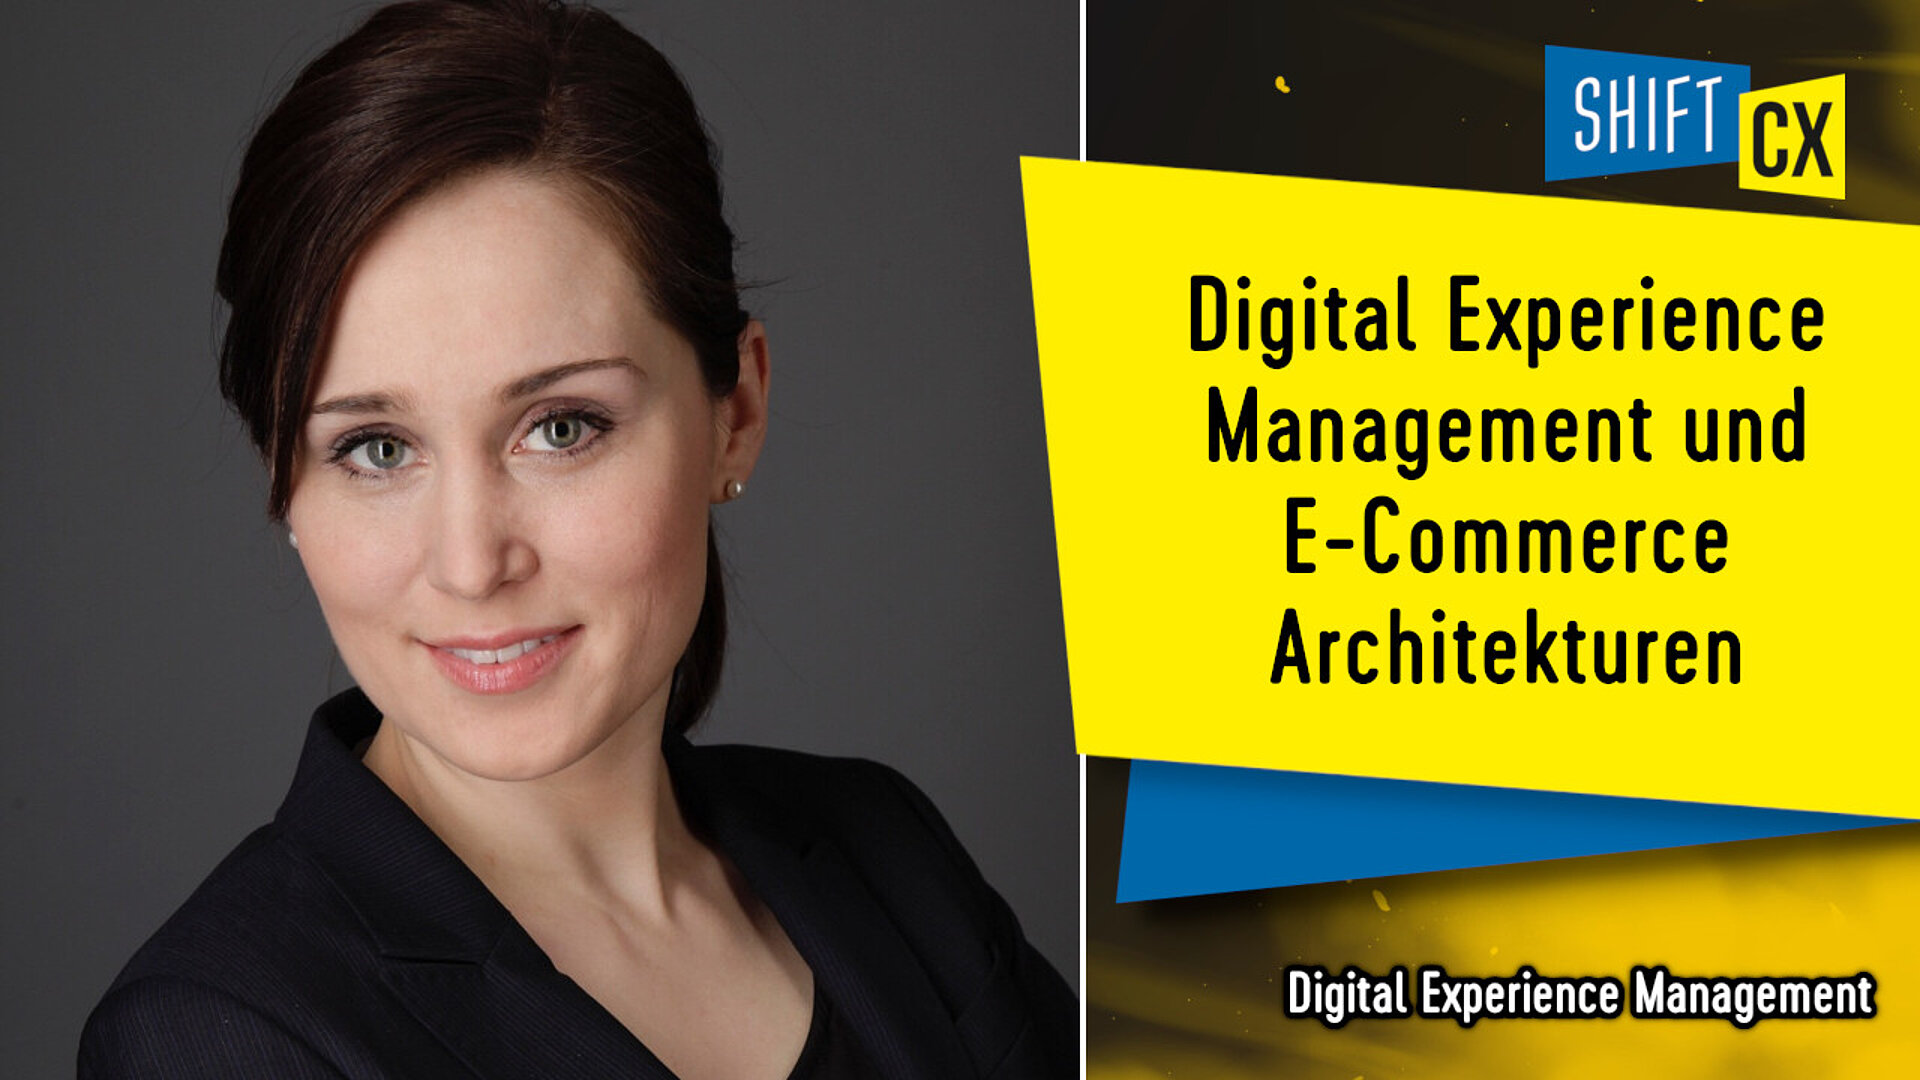 Digital Experience Management und E-Commerce Architekturen